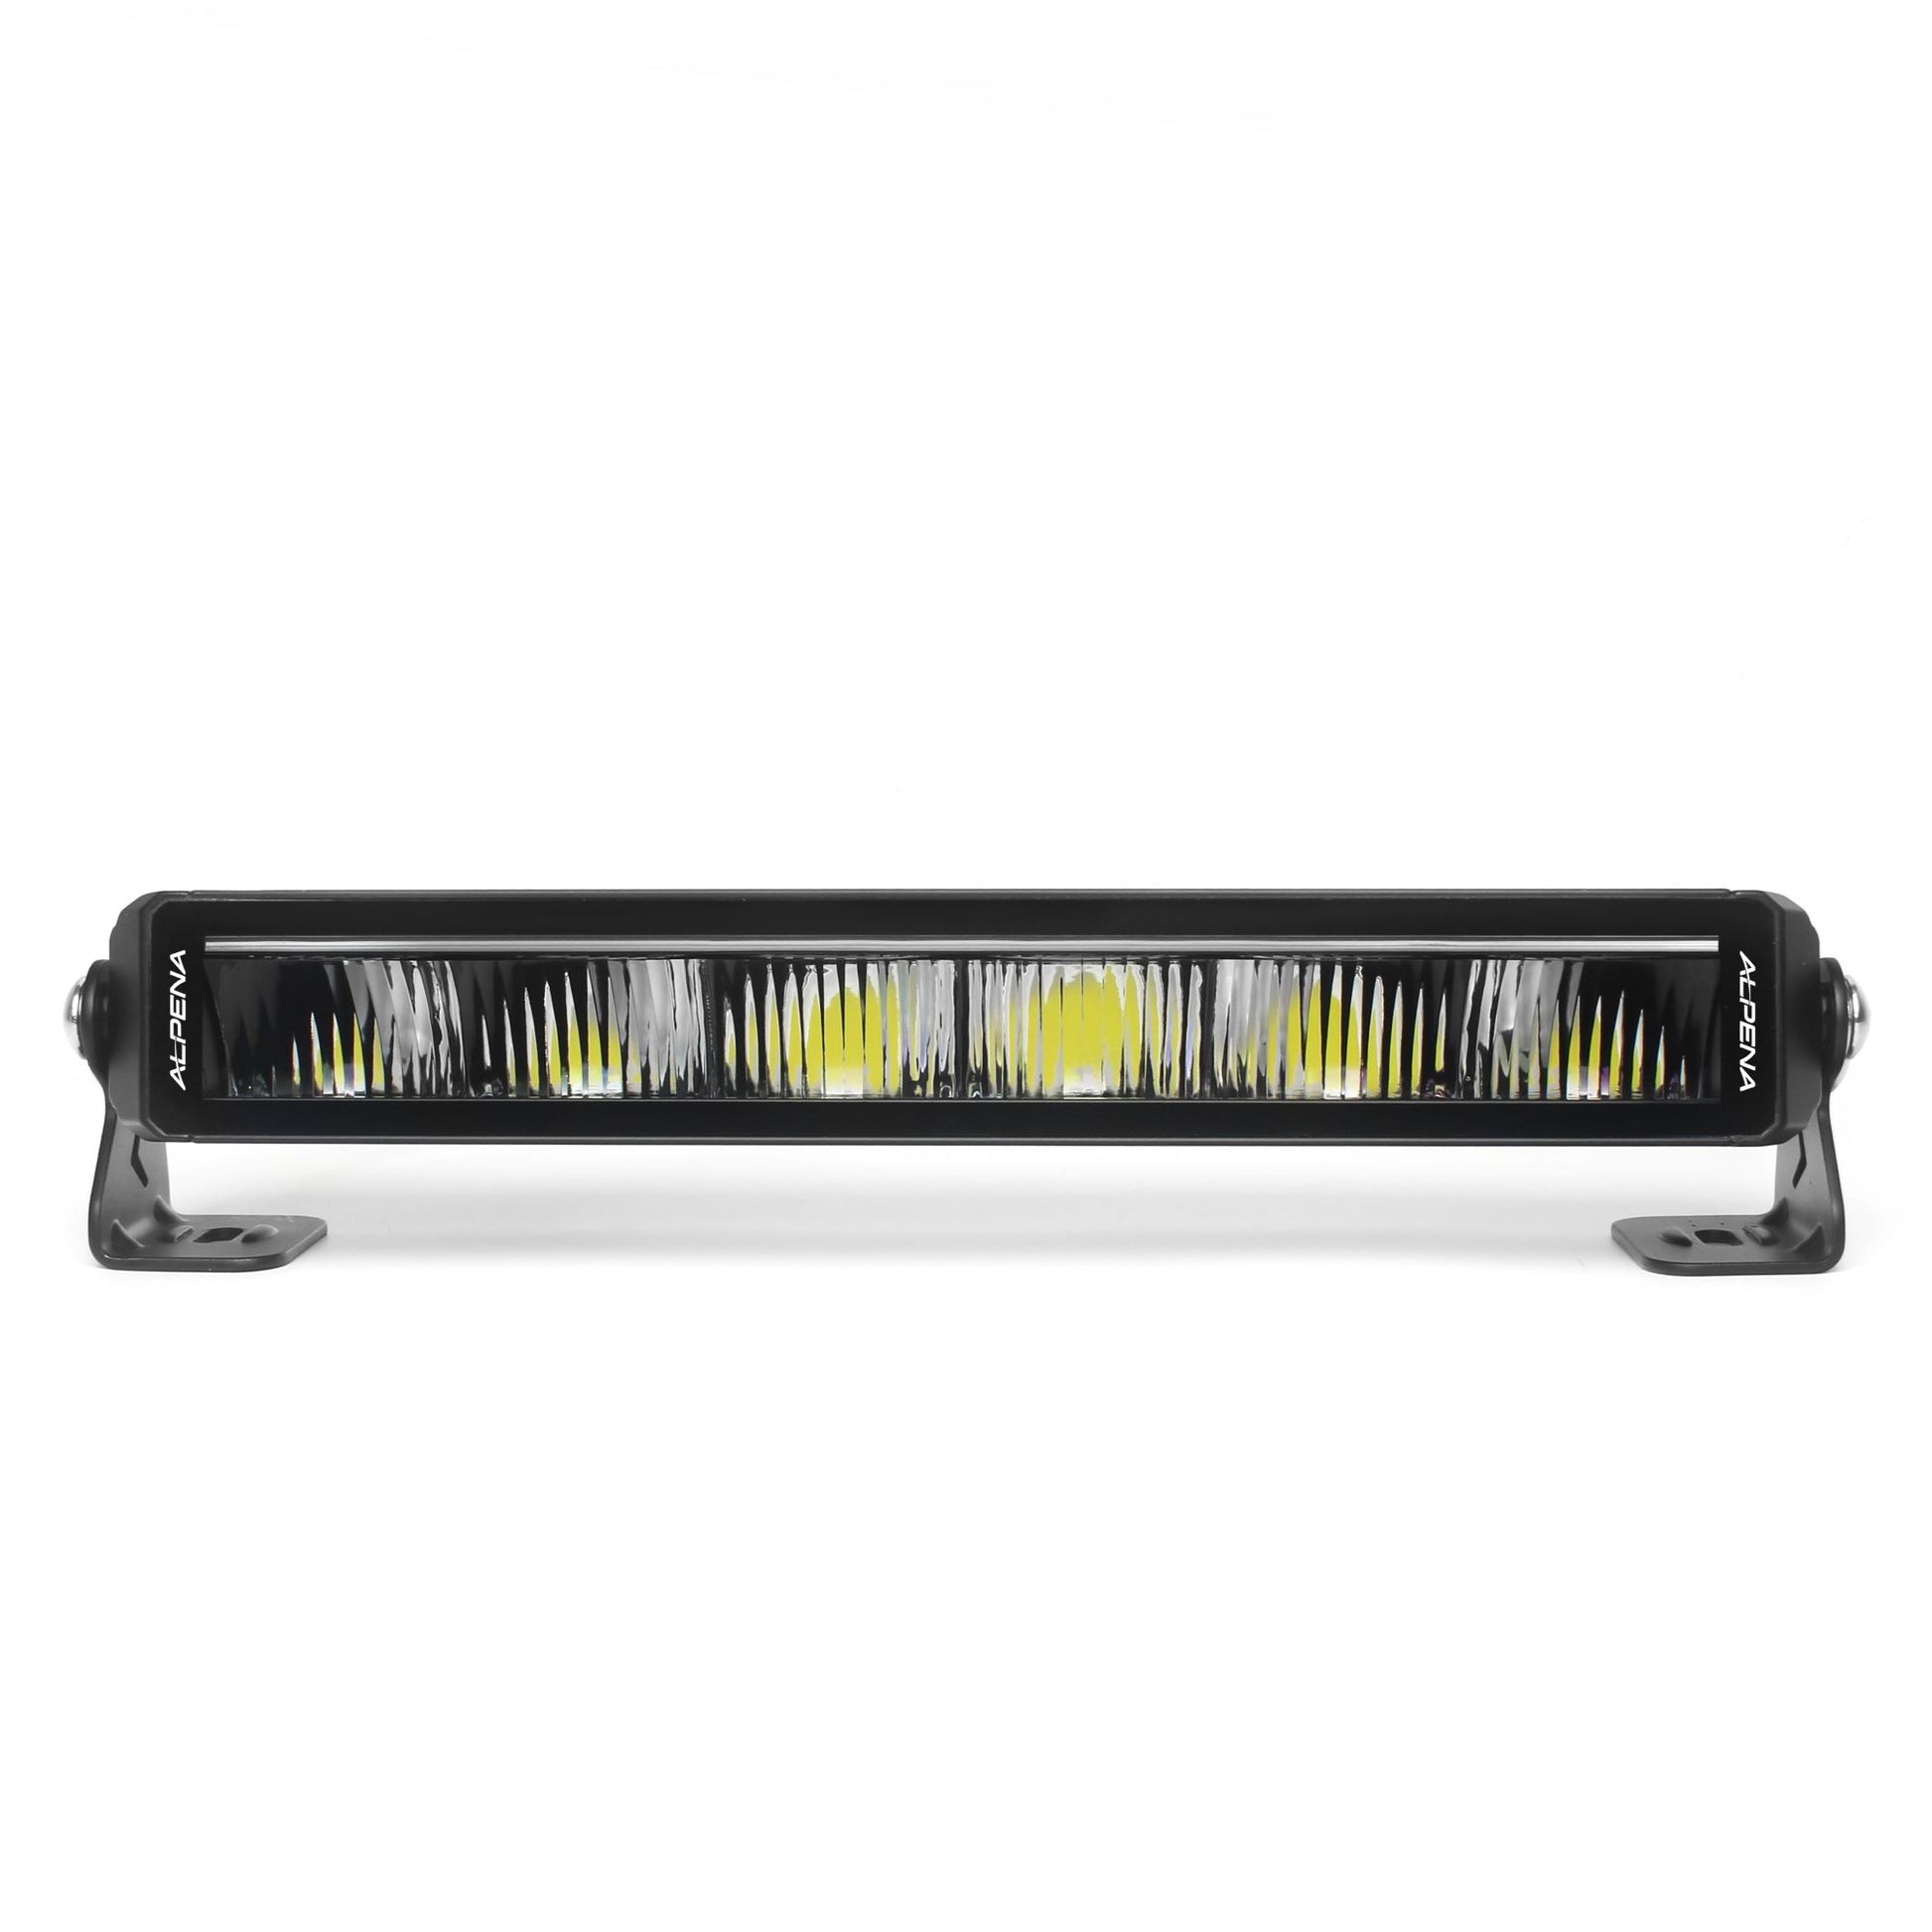 Alpena TREKTEC 15 LED Bar, 12V, Model 77628, Universal Fit for